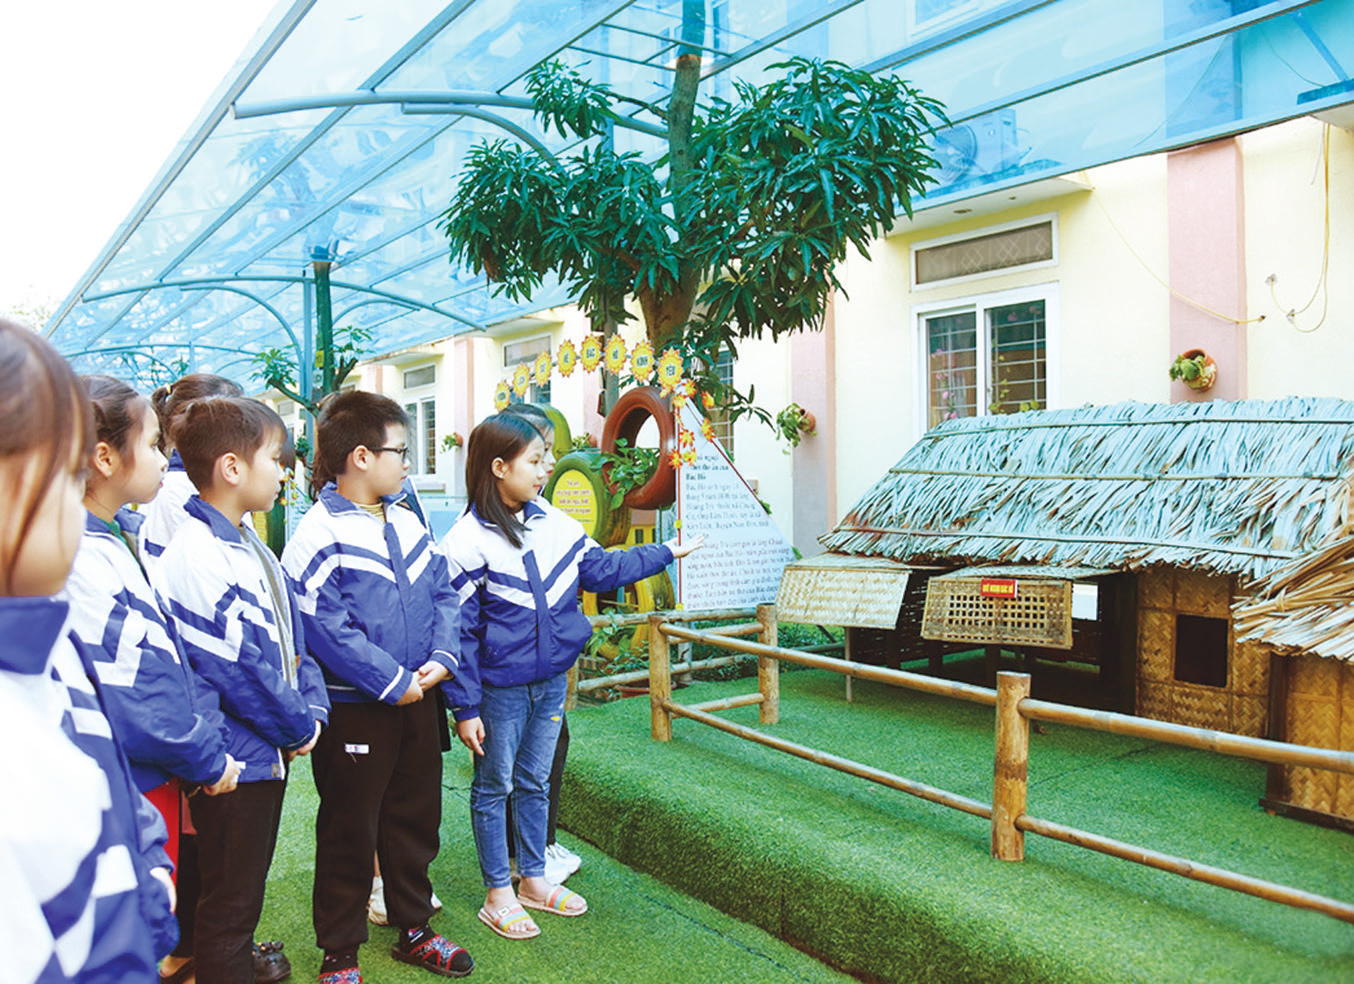 Vườn lịch sử không chỉ là nơi giúp học sinh học môn Lịch sử, mà còn là địa
điểm nhà trường tổ chức học và thi thuyết trình song ngữ Việt - Anh dành
cho khối lớp 2 đến lớp 5 về cuộc đời và sự nghiệp của Chủ tịch Hồ Chí Minh.